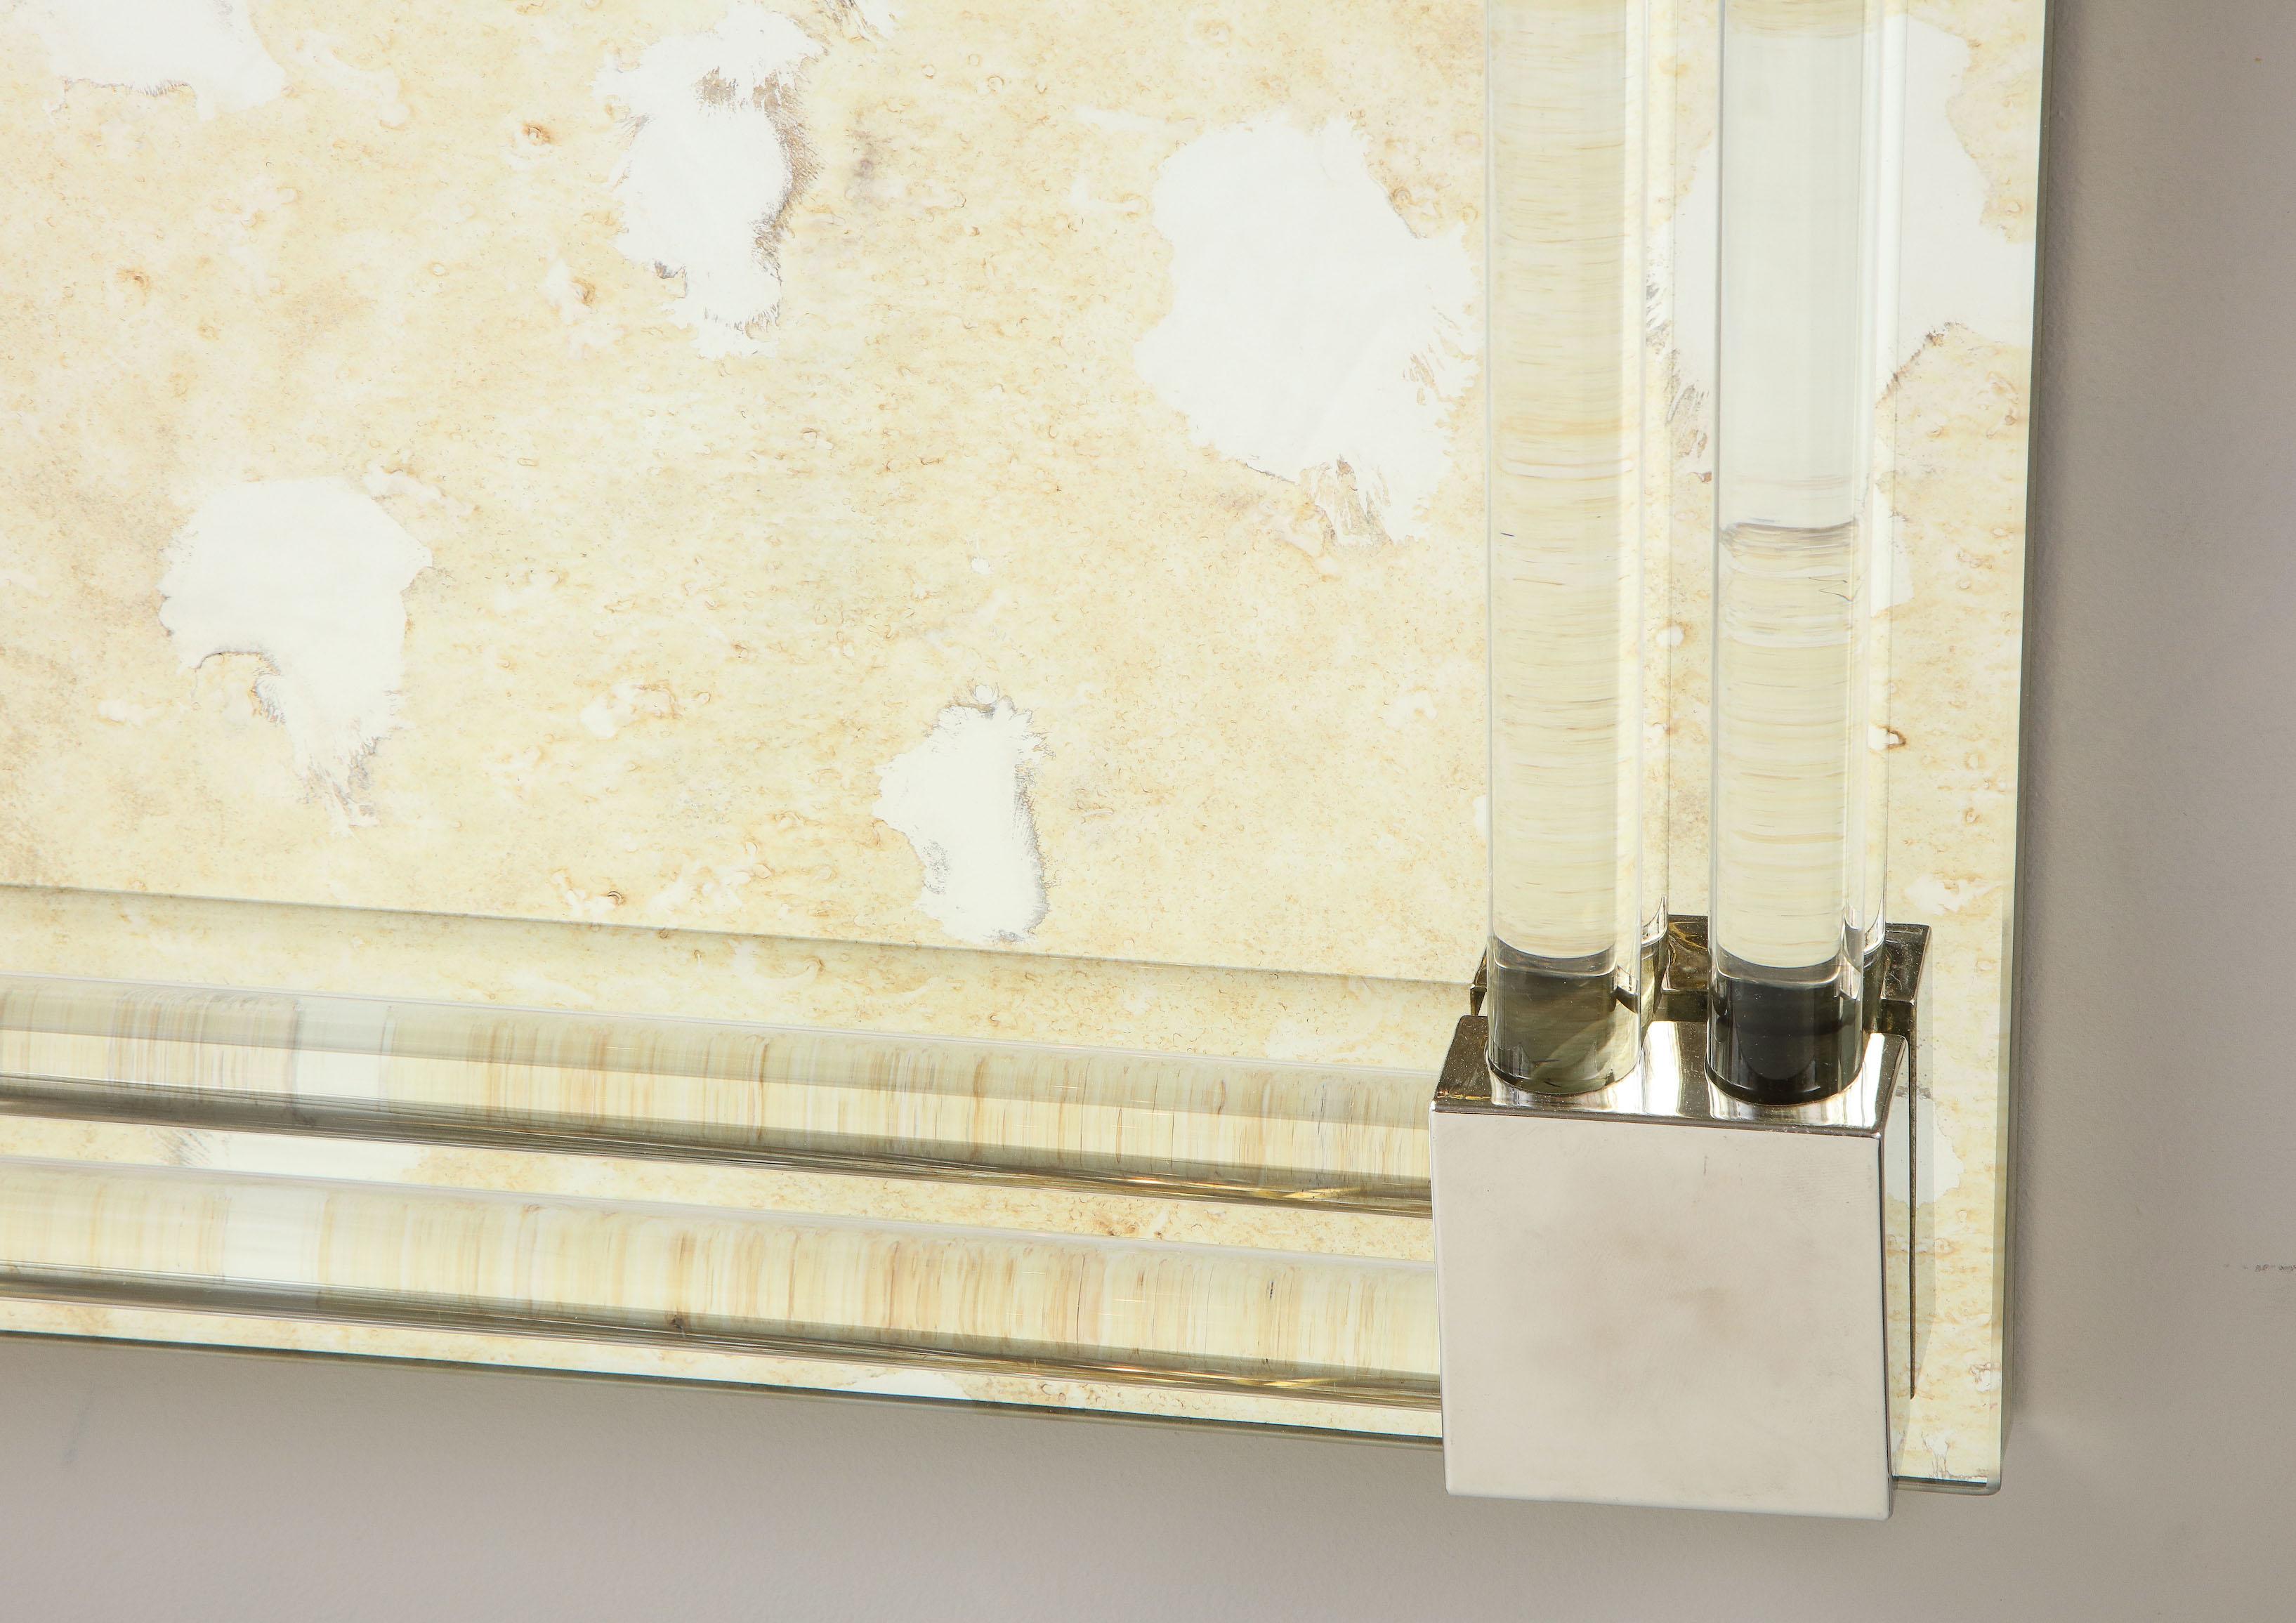 Magnifique miroir rectangulaire avec cadre à baguettes en verre et accents métalliques. Le modèle présenté est en finition miroir antique nuageux de couleur or, et est disponible pour un achat immédiat. Possibilité de personnalisation dans